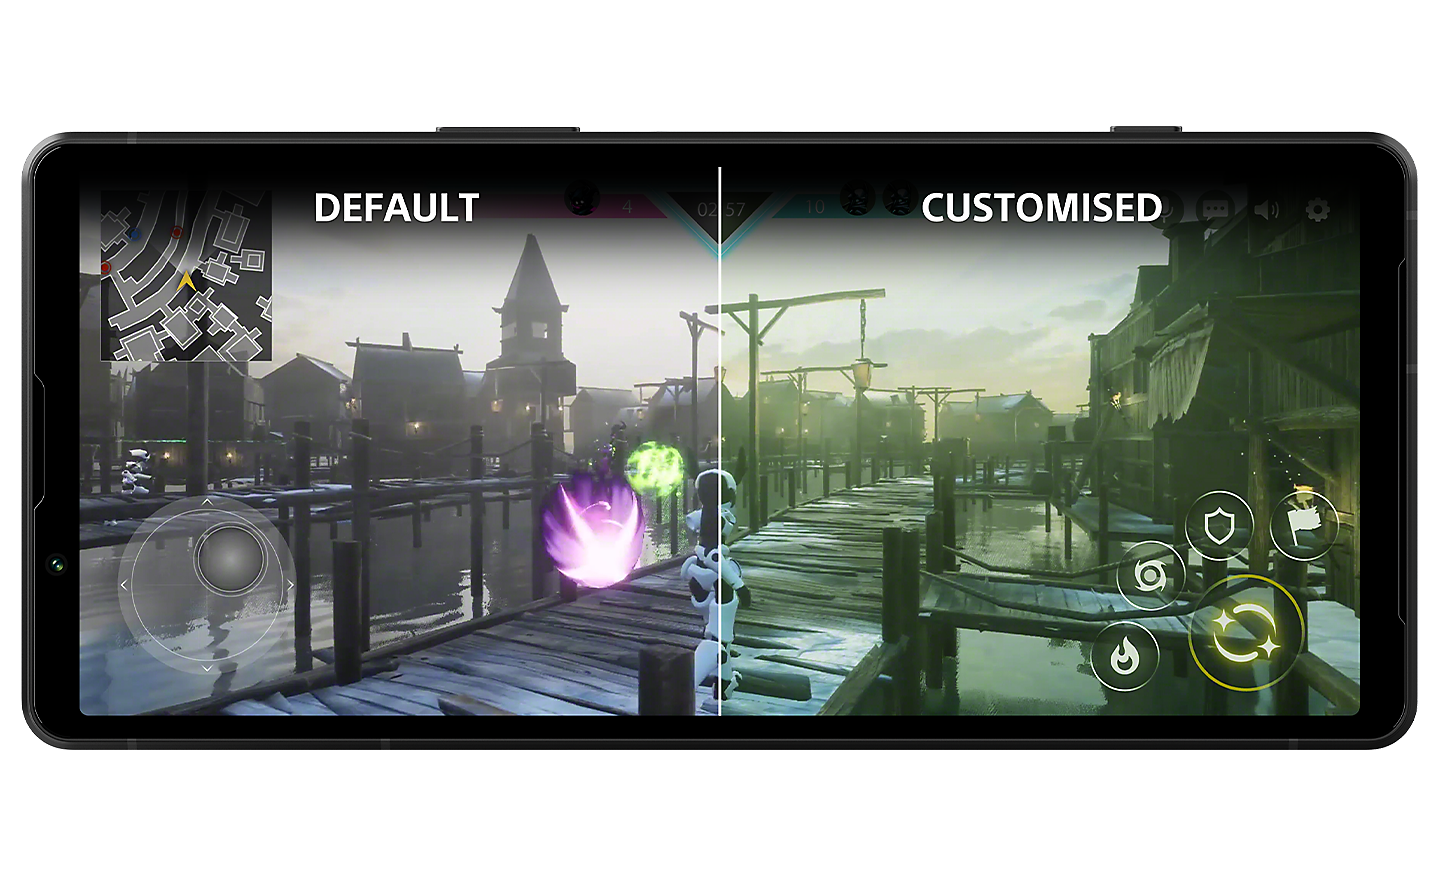 Chiếc Xperia 5 V có màn hình chia đôi thể hiện hình ảnh game, màu sắc hai bên khác nhau với chữ DEFAULT (MẶC ĐỊNH) bên trái và CUSTOMISED (TÙY CHỈNH) bên phải